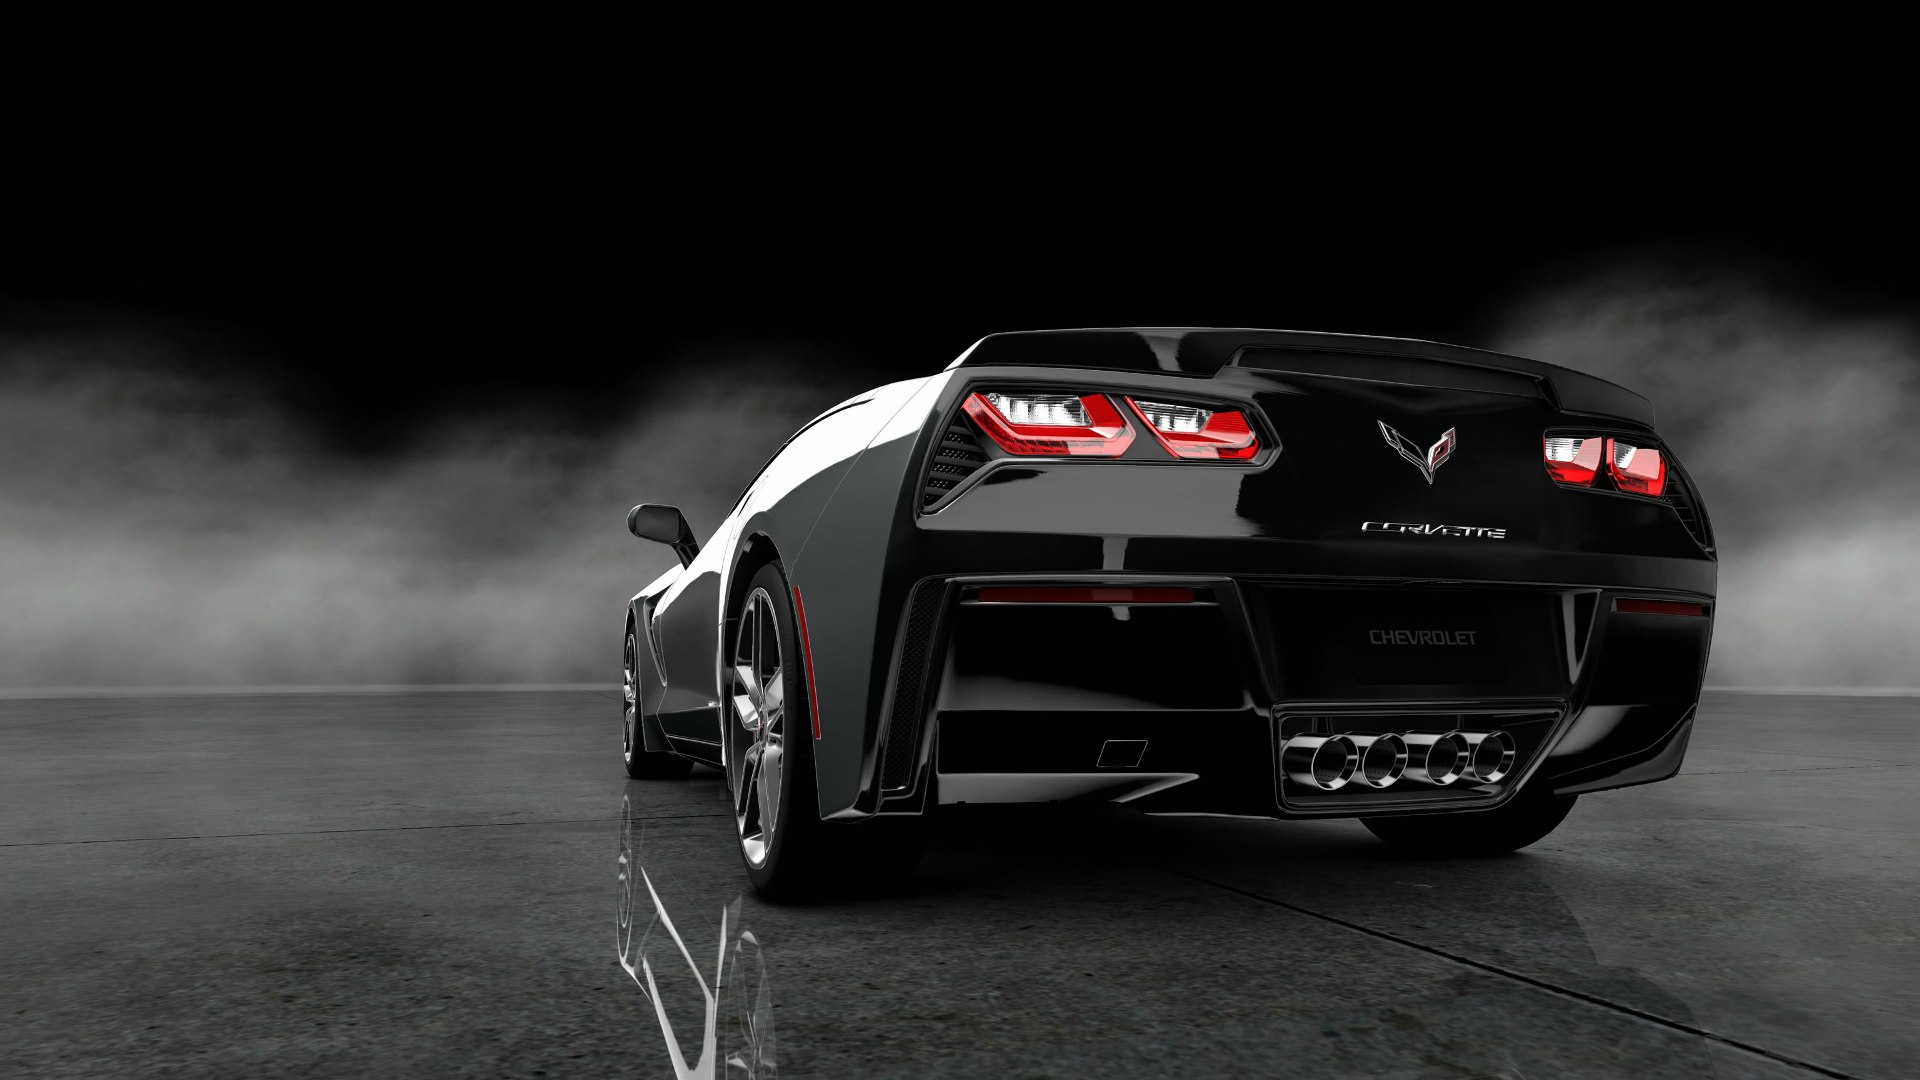 Black Corvette Wallpapers